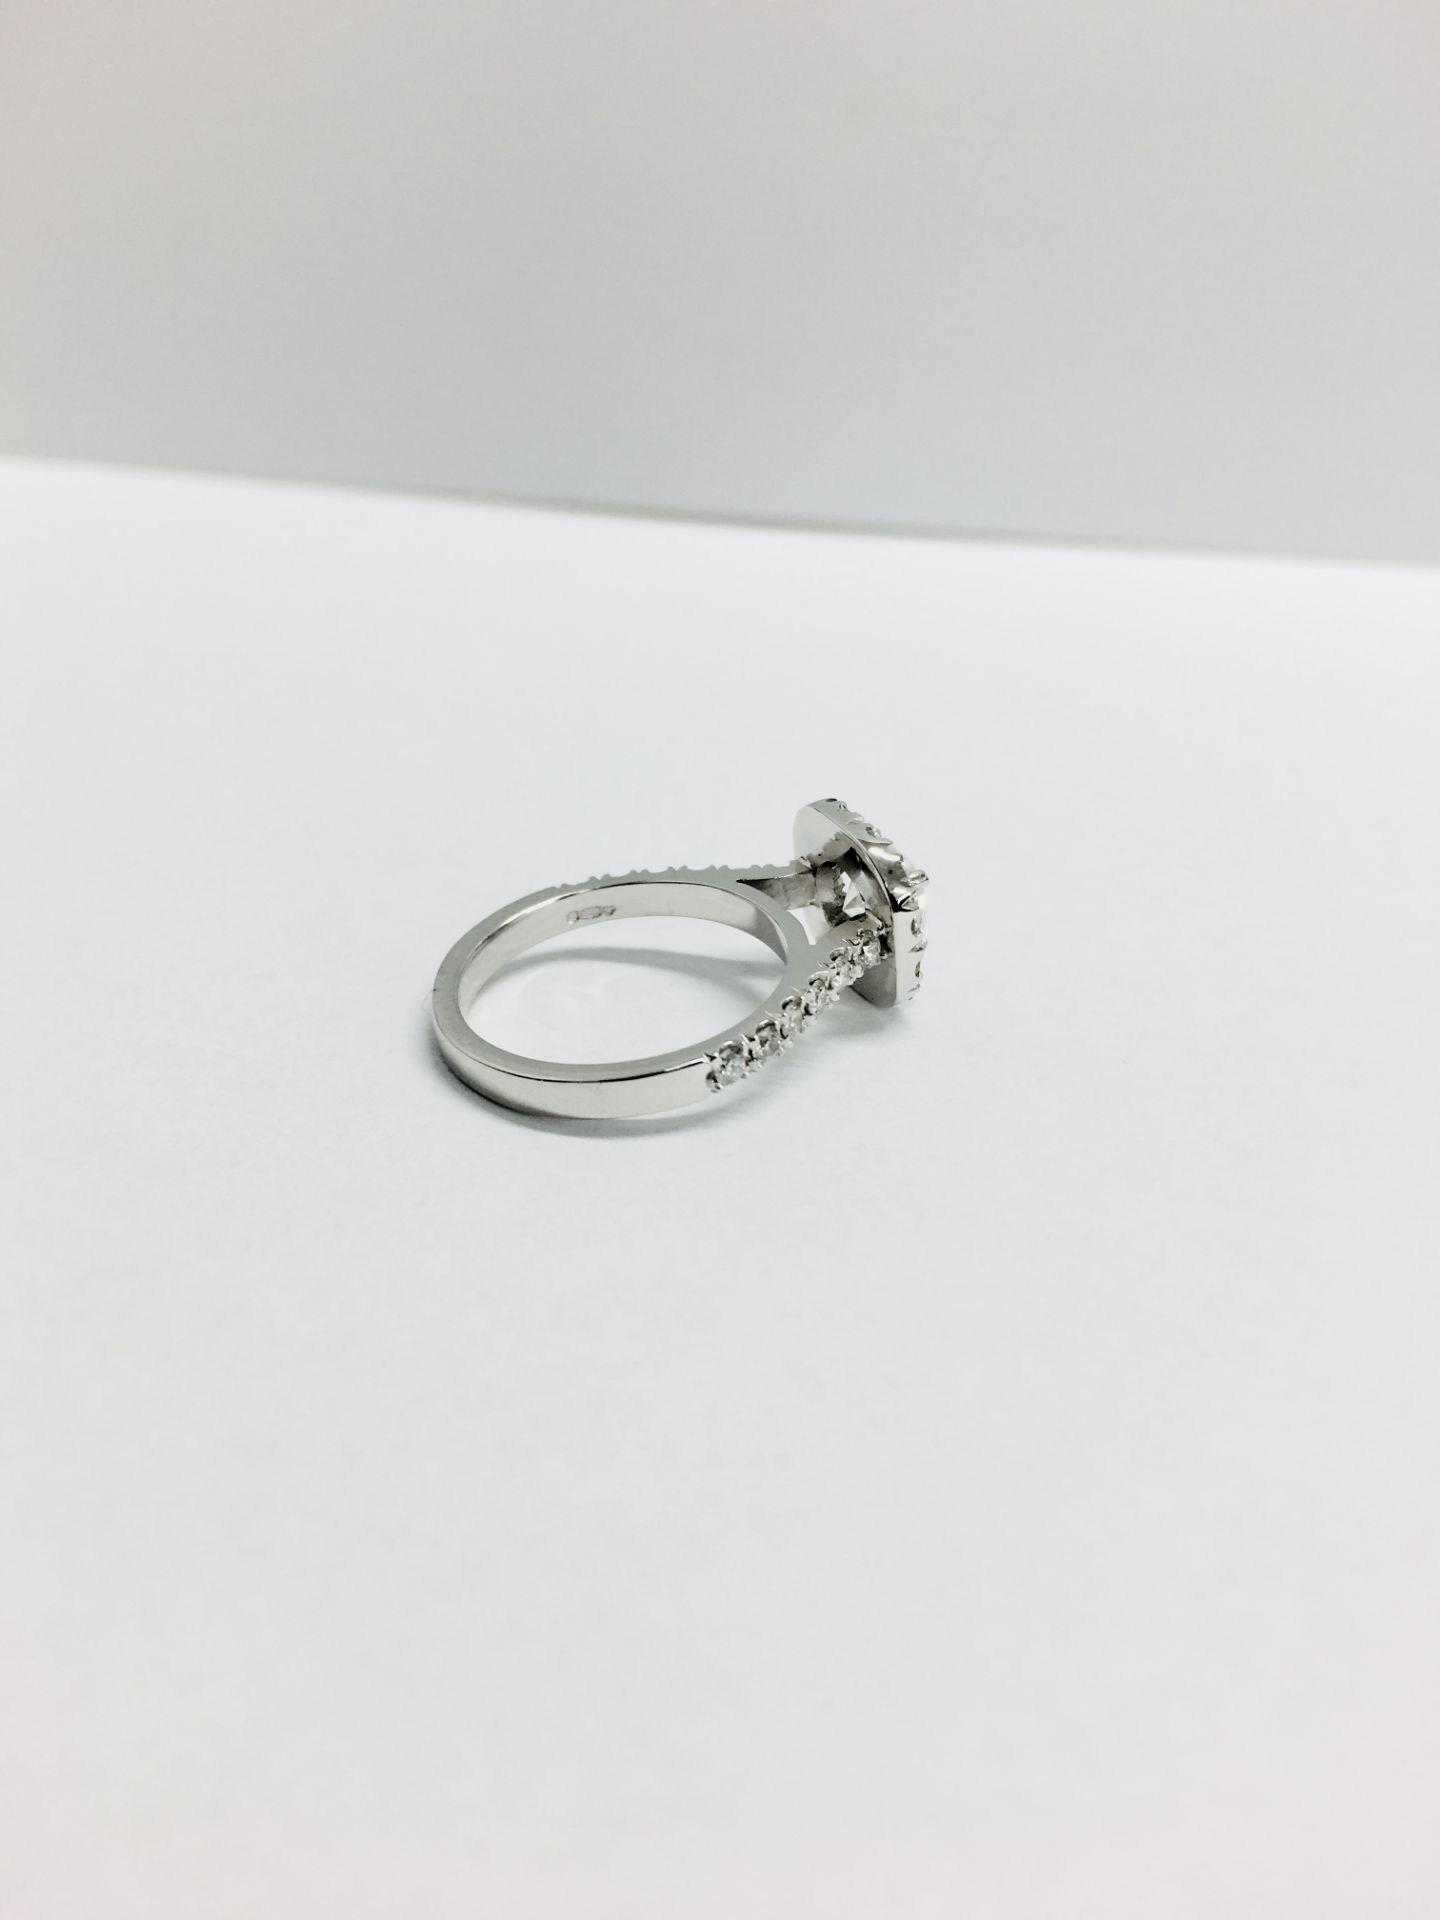 18ct white gold Halo style Diamond ring,0.50ct brilliant cut centre,h colour vs clarity,0.25ct - Image 5 of 6